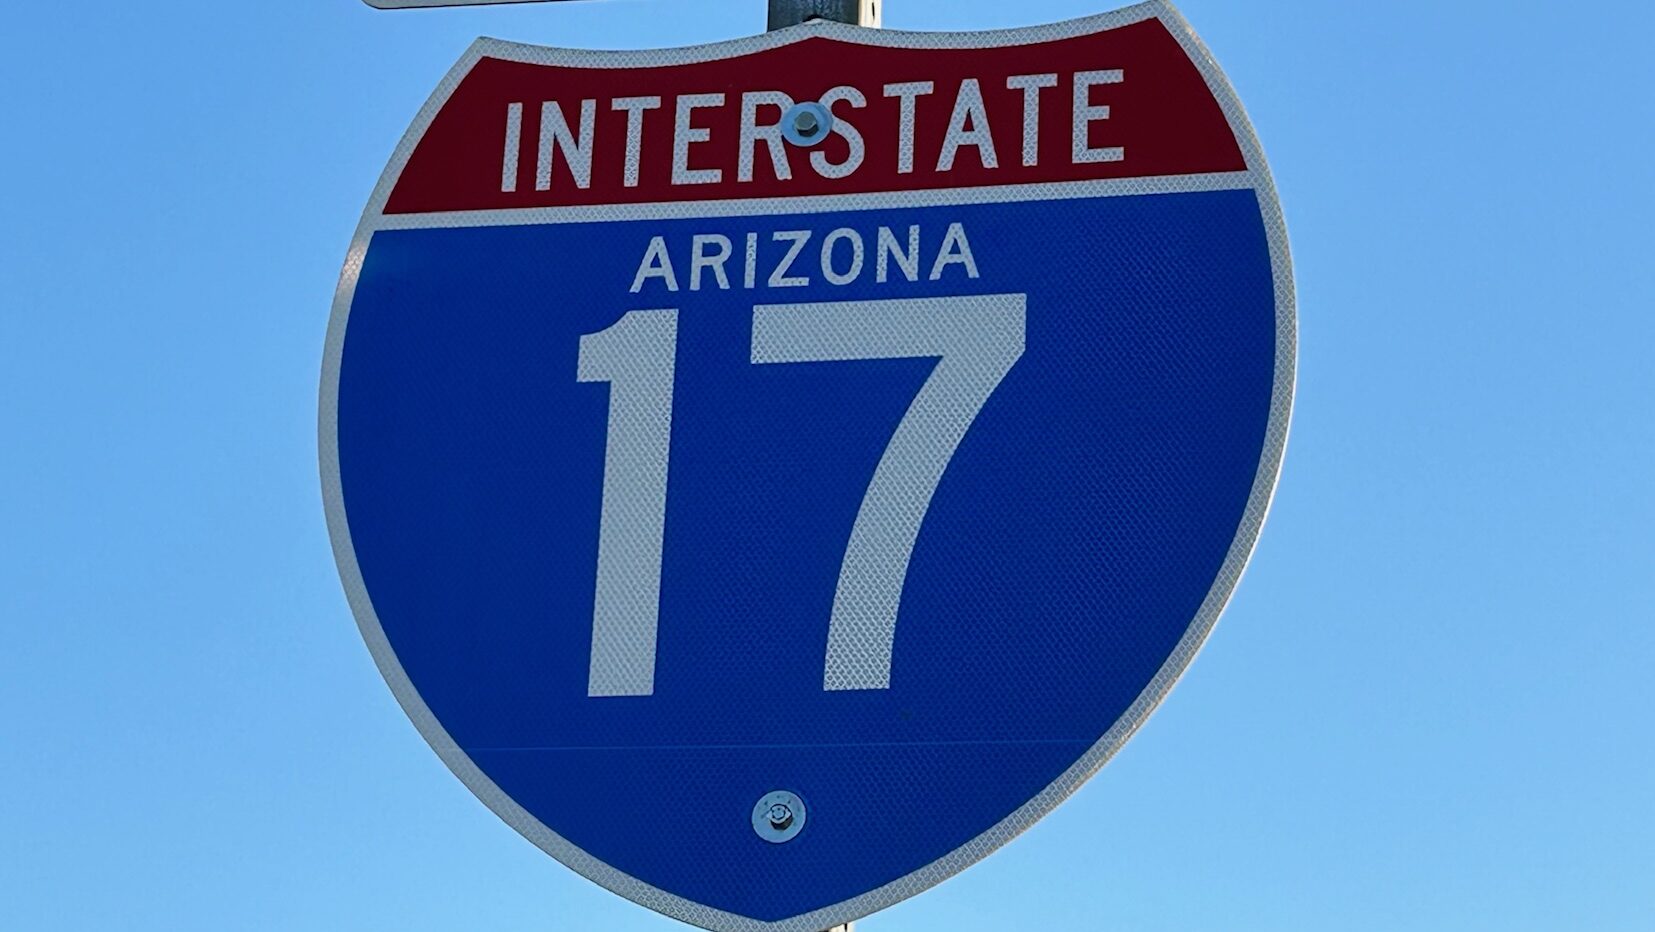 Interstate 17...